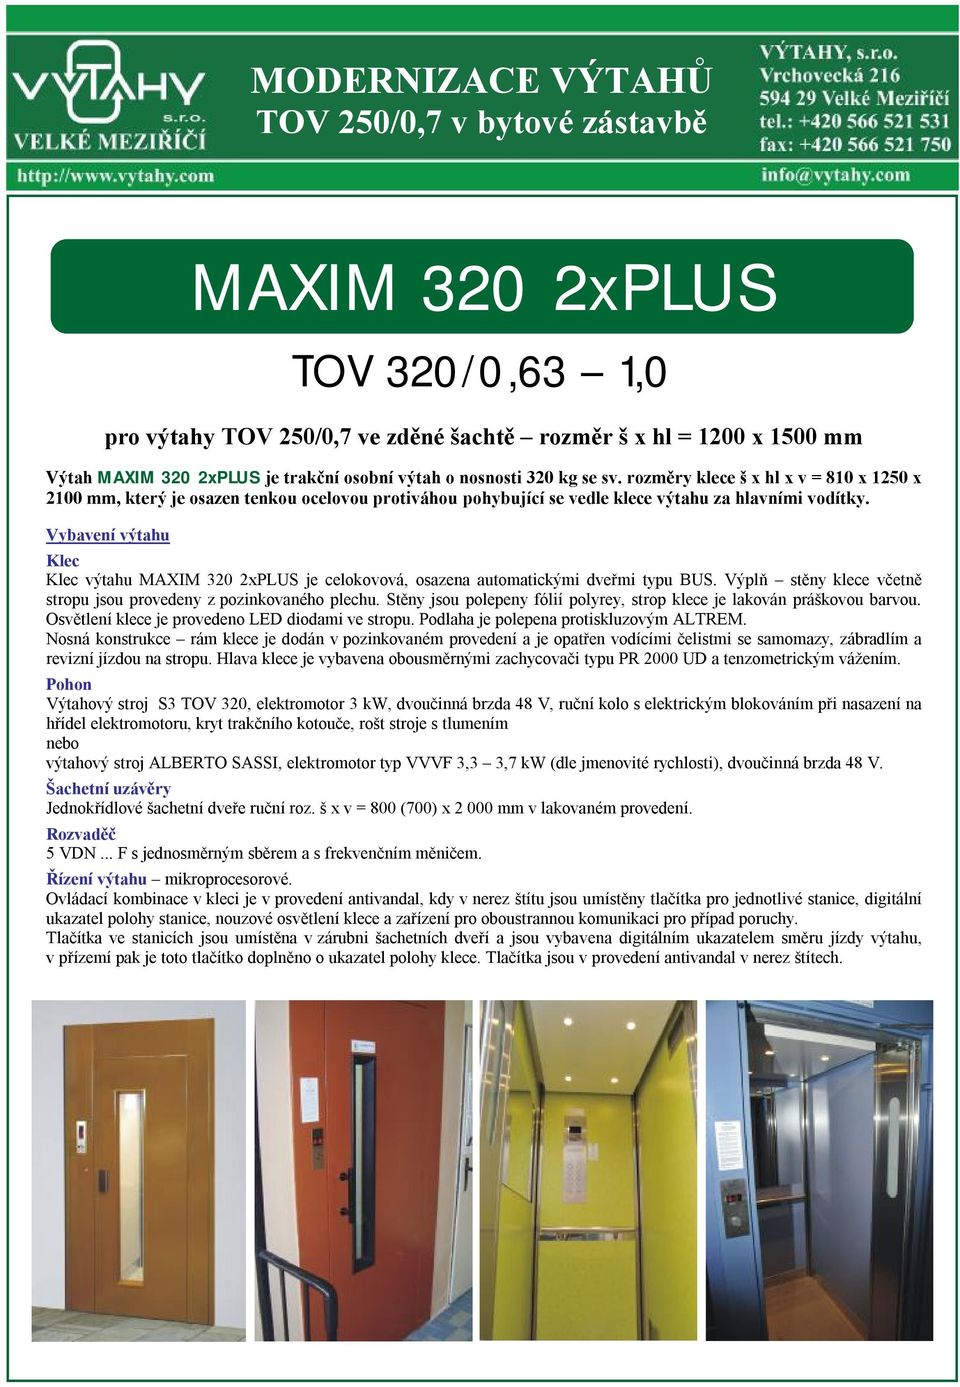 Vybavení výtahu Klec Klec výtahu MAXIM 320 2xPLUS je celokovová, osazena automatickými dveřmi typu BUS. Výplň stěny klece včetně stropu jsou provedeny z pozinkovaného plechu.